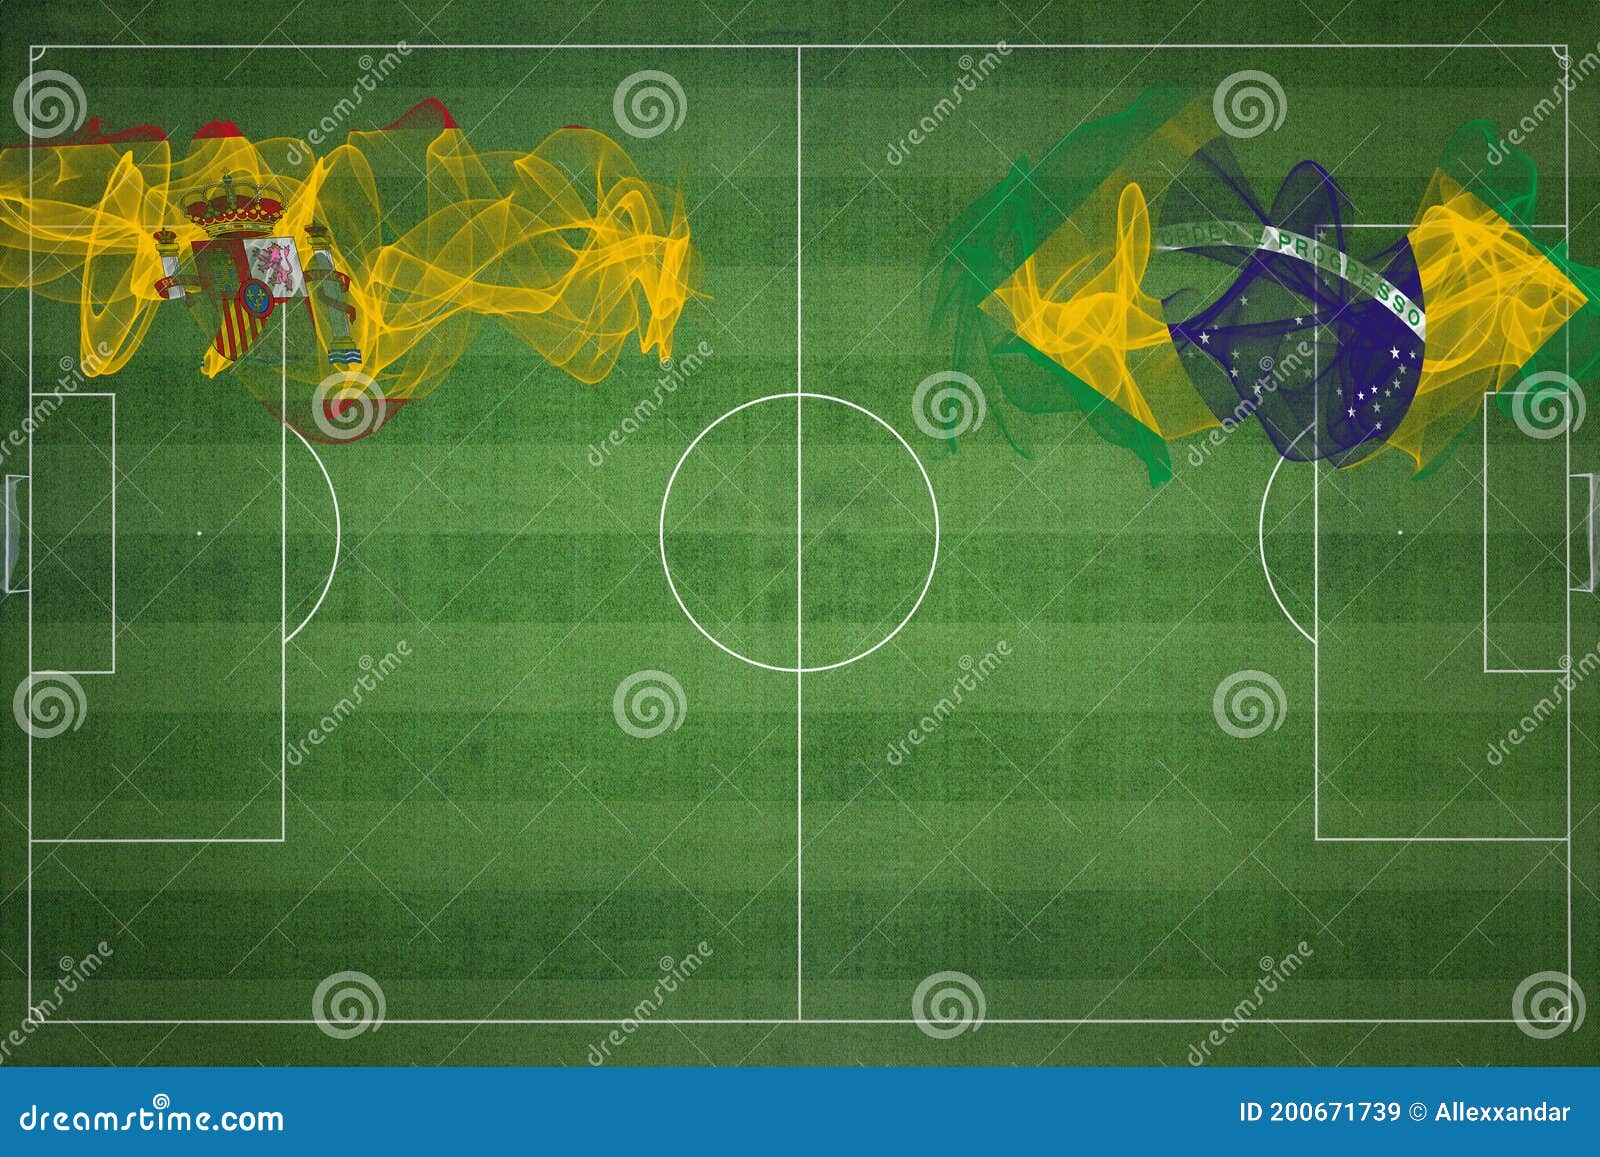 Spain Vs Brazil Soccer Match, National Colors, National Flags, Soccer